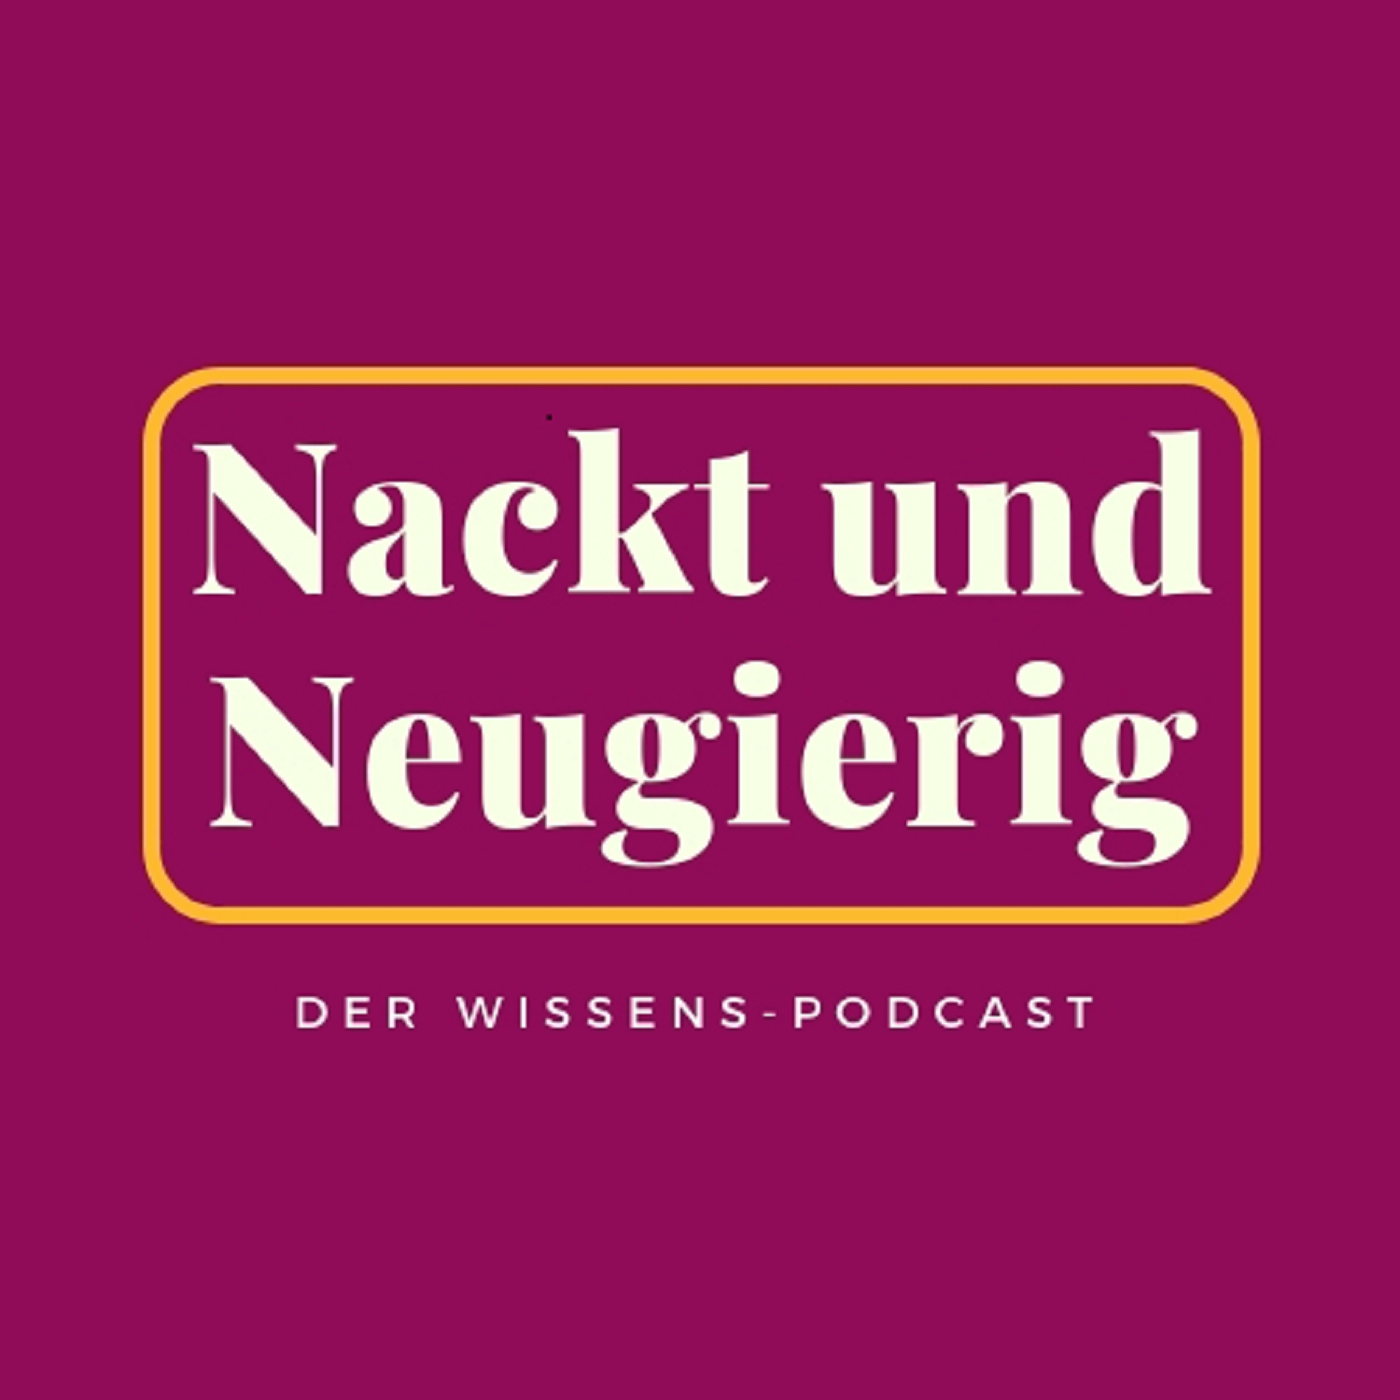 Nackt und Neugierig: Der Wissenspodcast podcast show image